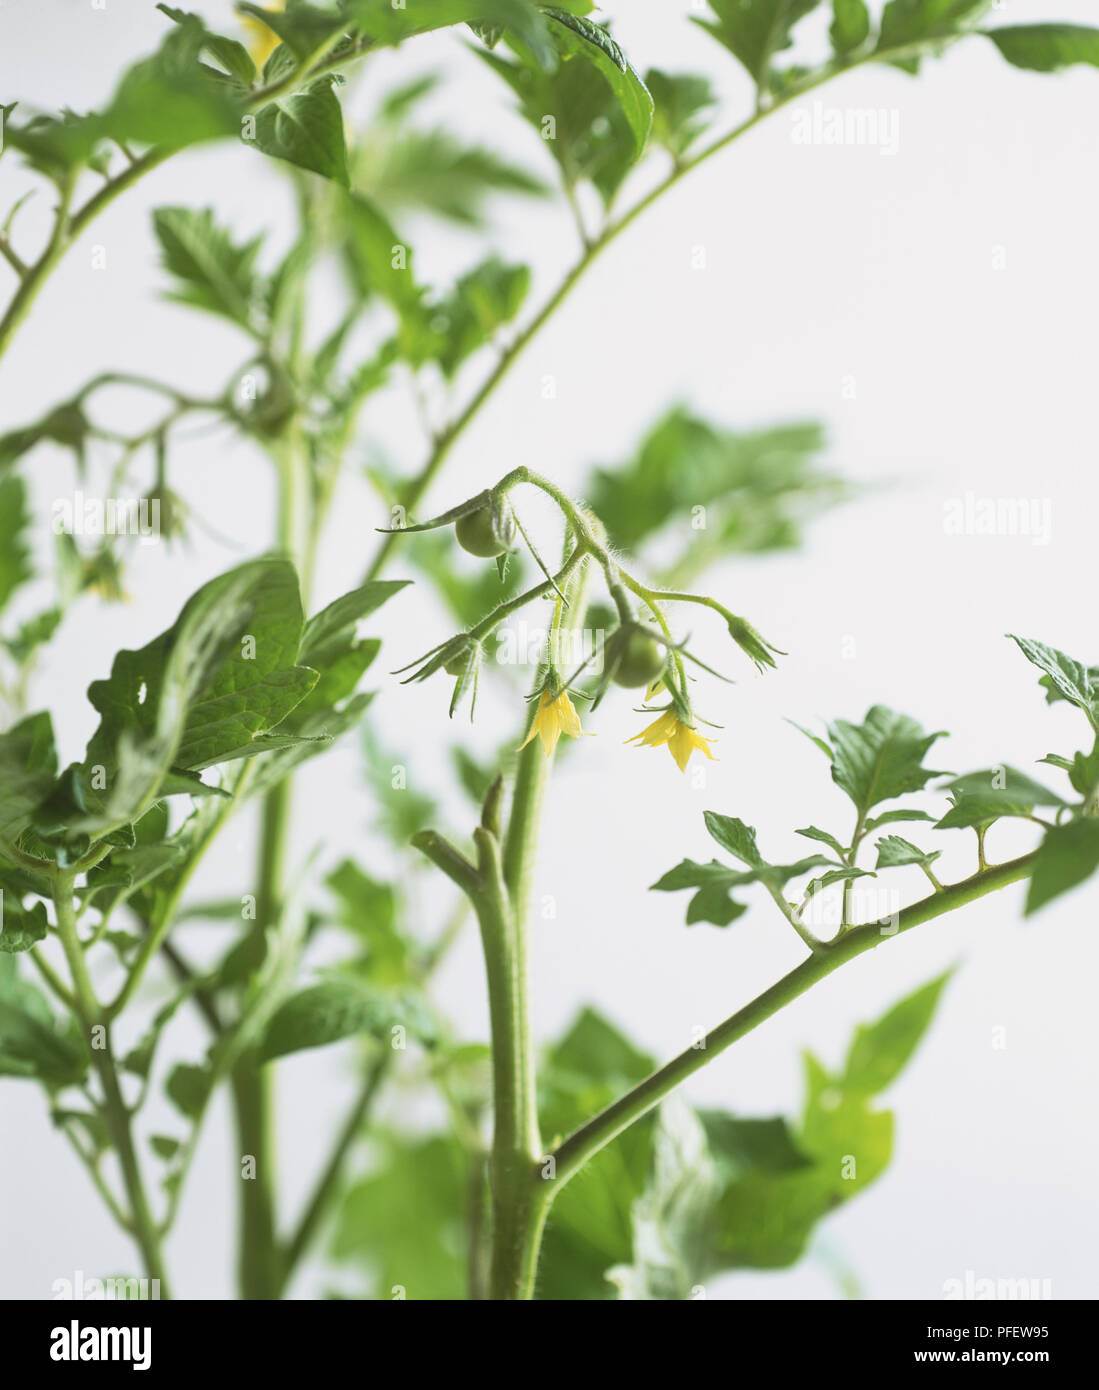 Solanum Lycopersicum, grüne Tomaten Knospen und stacheligen gelben Blumen auf tomatenpflanze stammt, in der Nähe Stockfoto